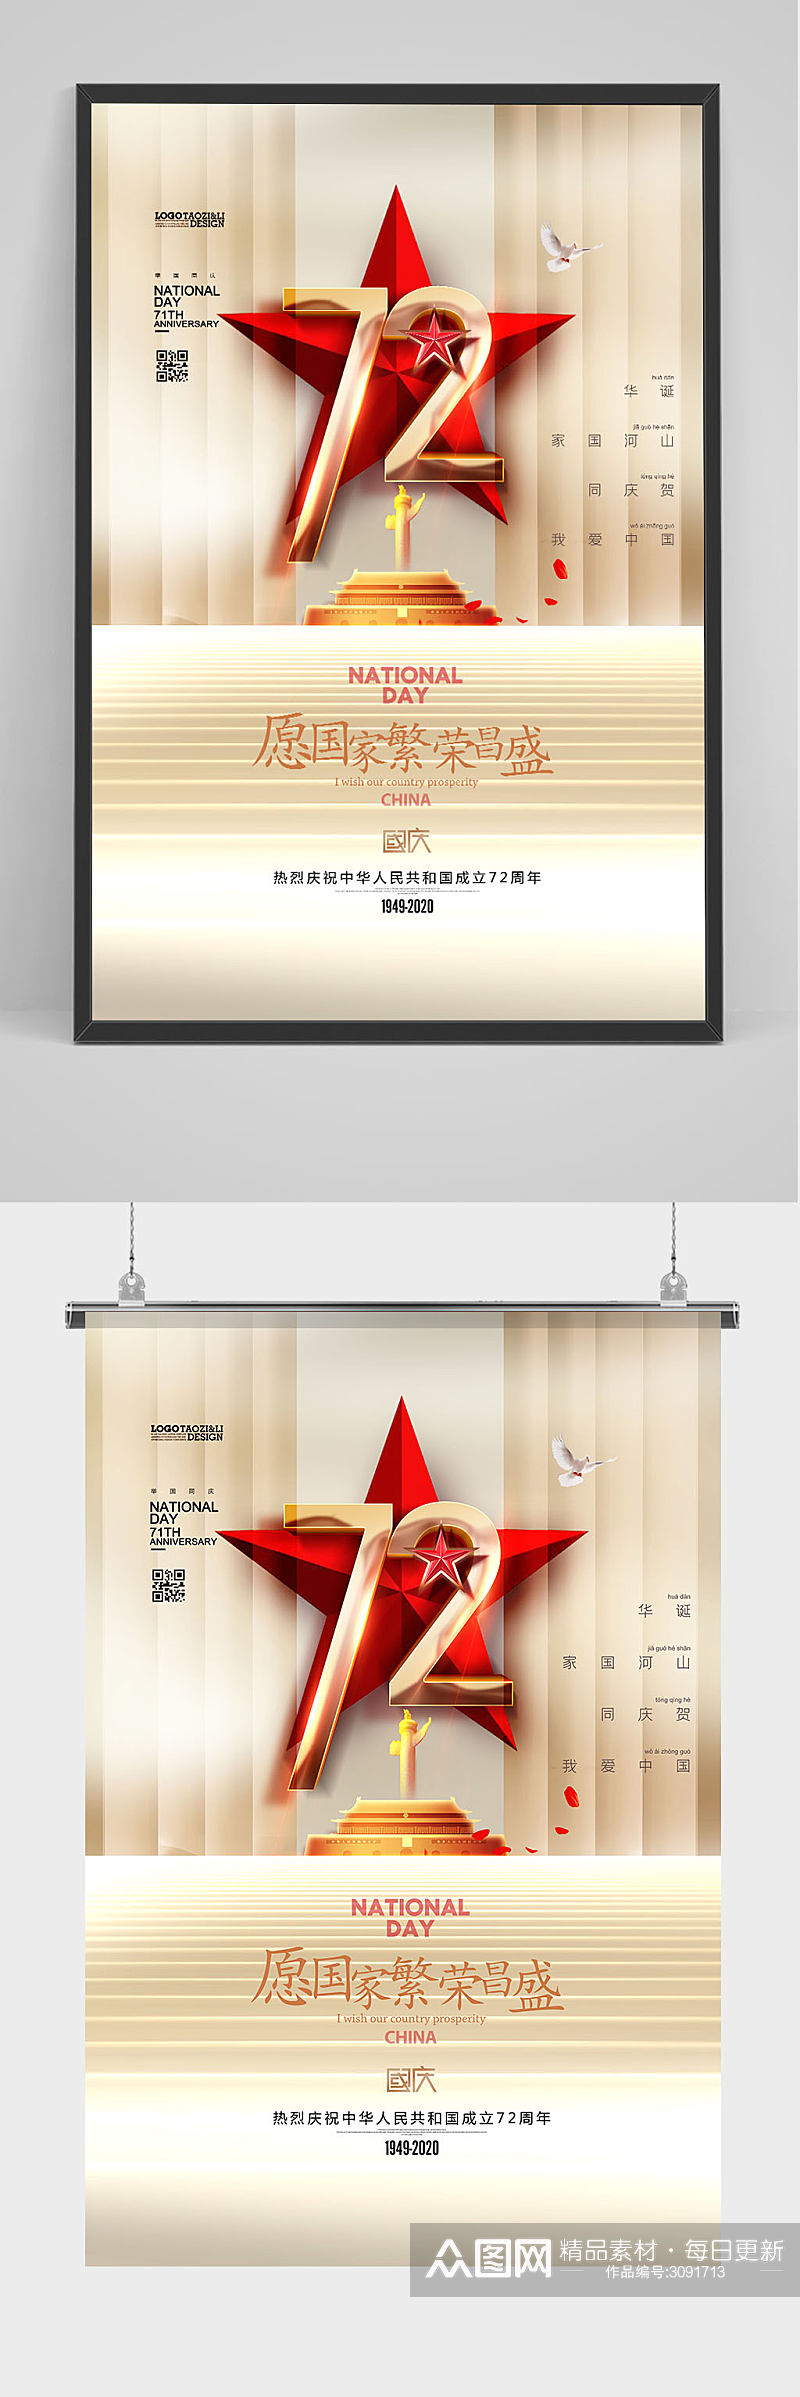 庆祝国庆节宣传海报素材